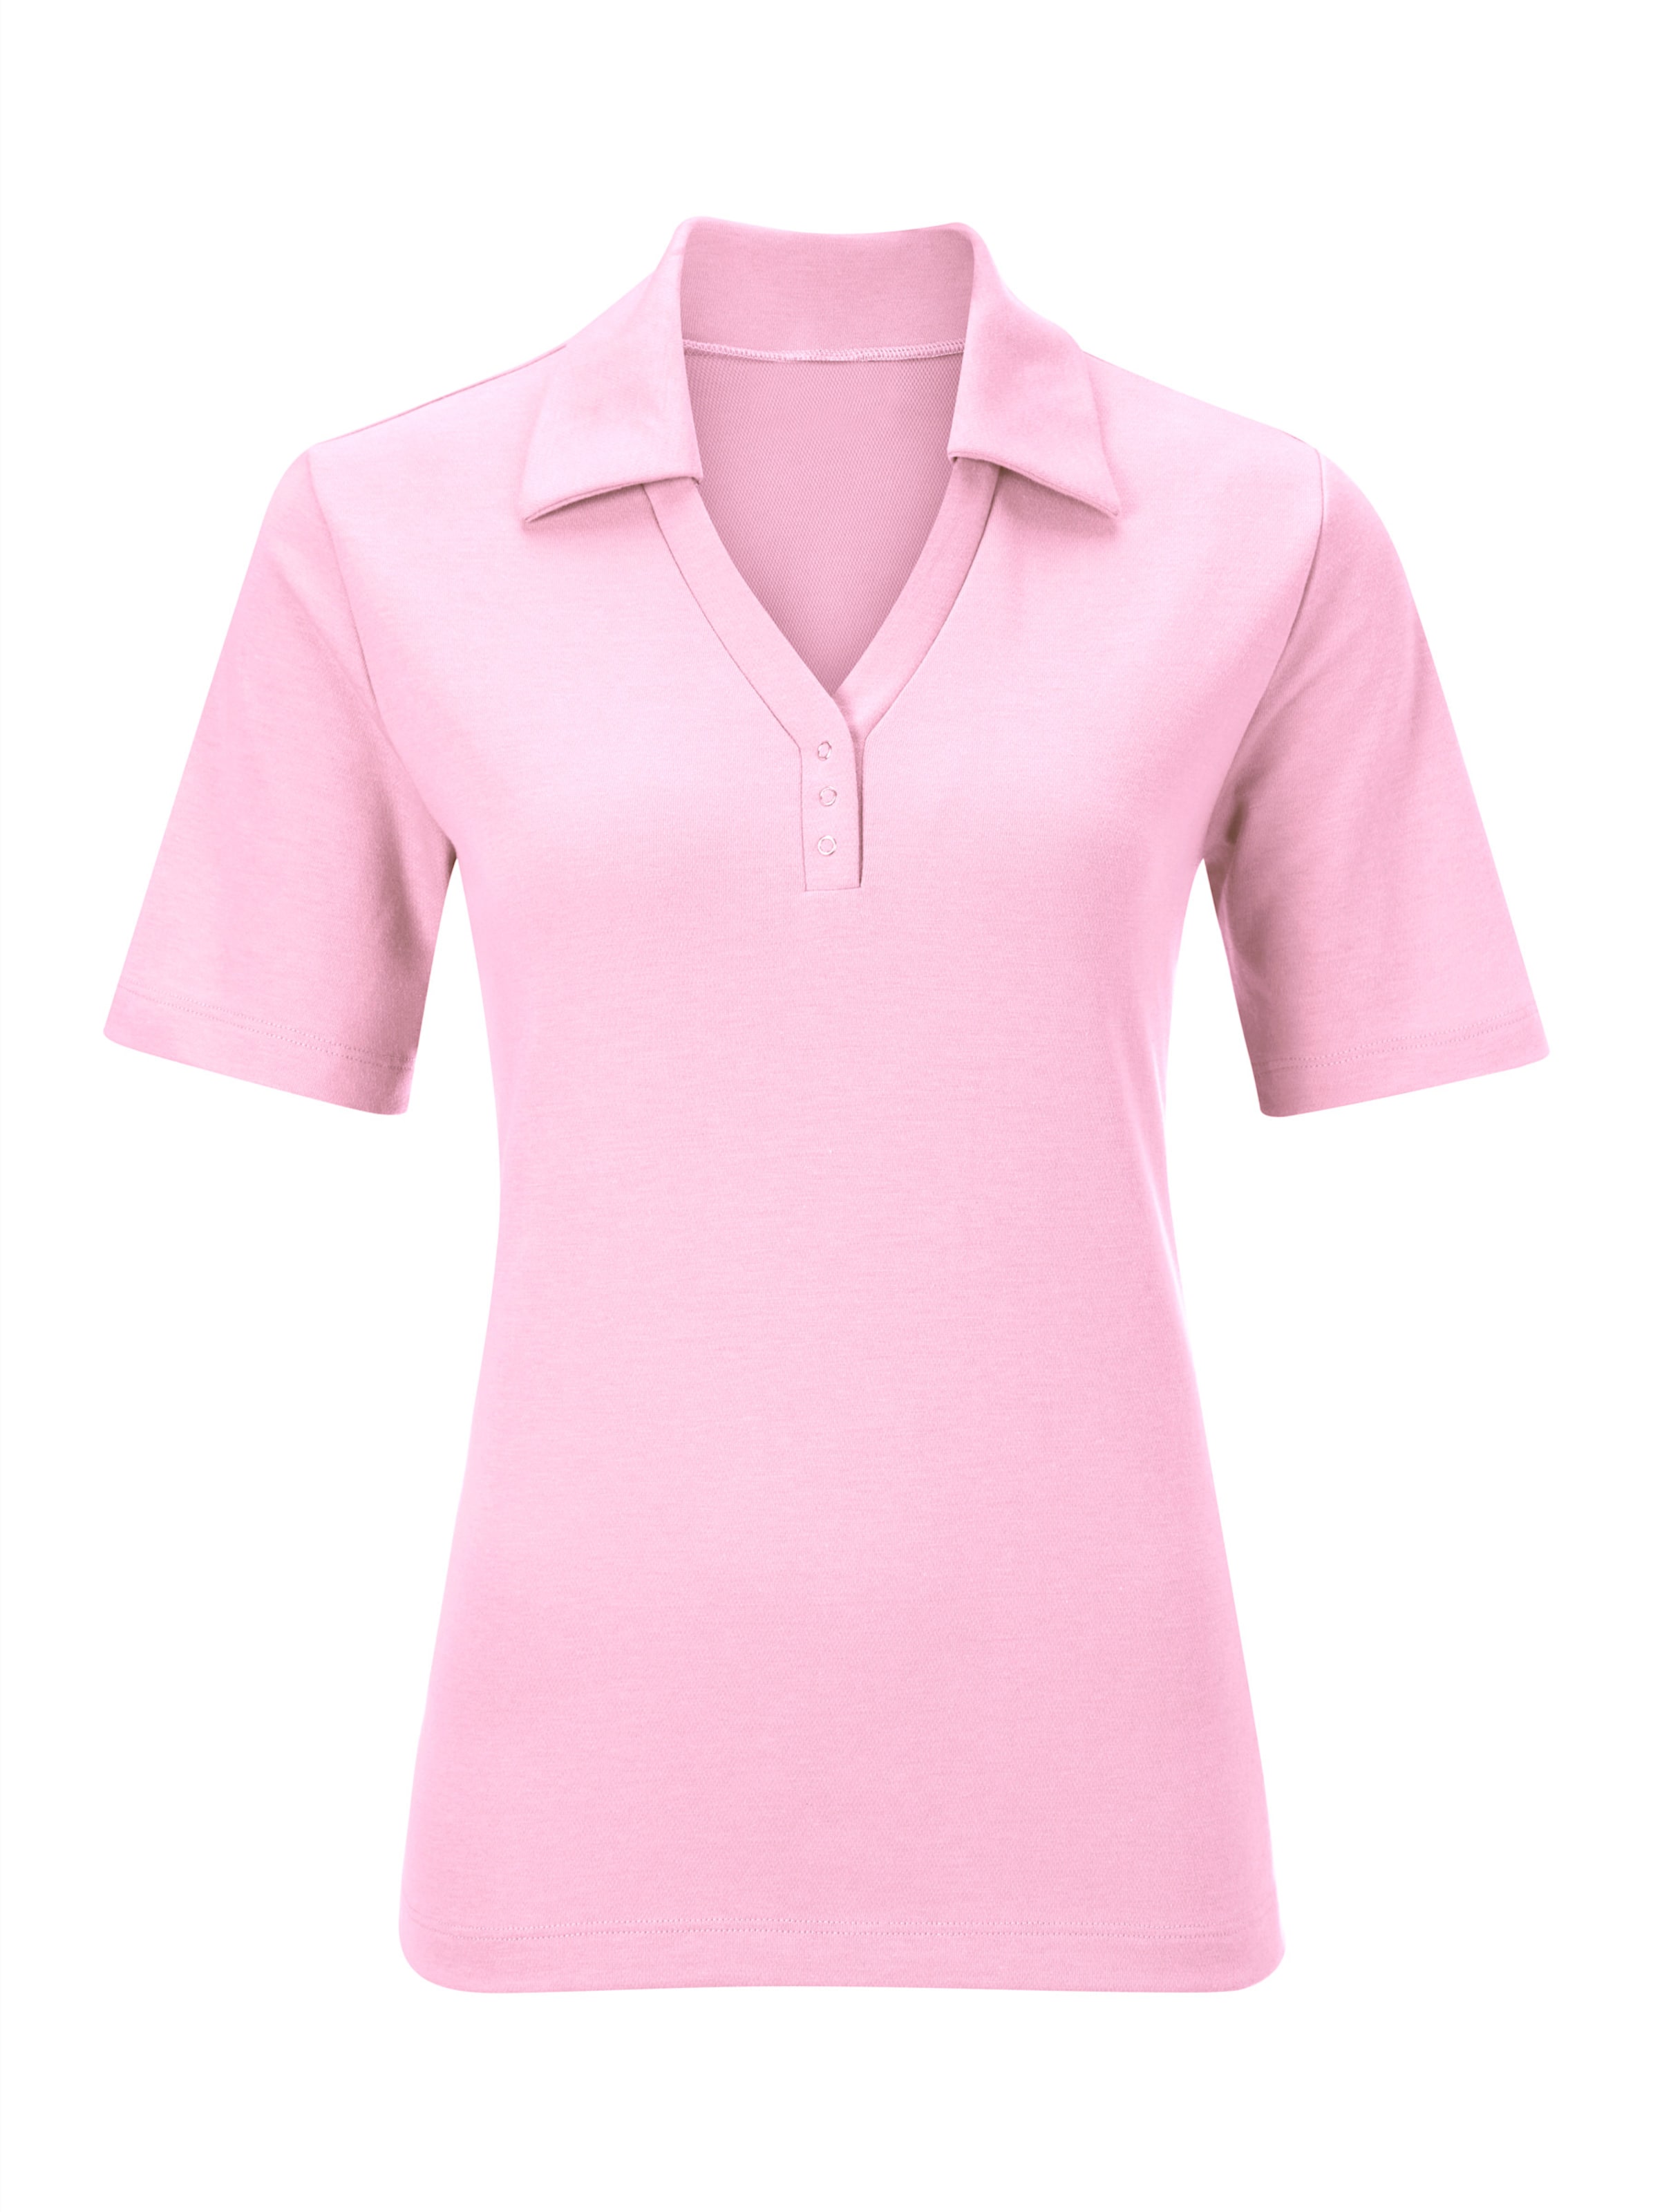 Offener günstig Kaufen-Poloshirt in rosé von heine. Poloshirt in rosé von heine <![CDATA[Shirt mit offener Kragenlösung. Kleine Knopfleiste mit Druckknöpfen. Seitenschlitze. Spezielle Stay Cool & Dry-Ausrüstung.]]>. 